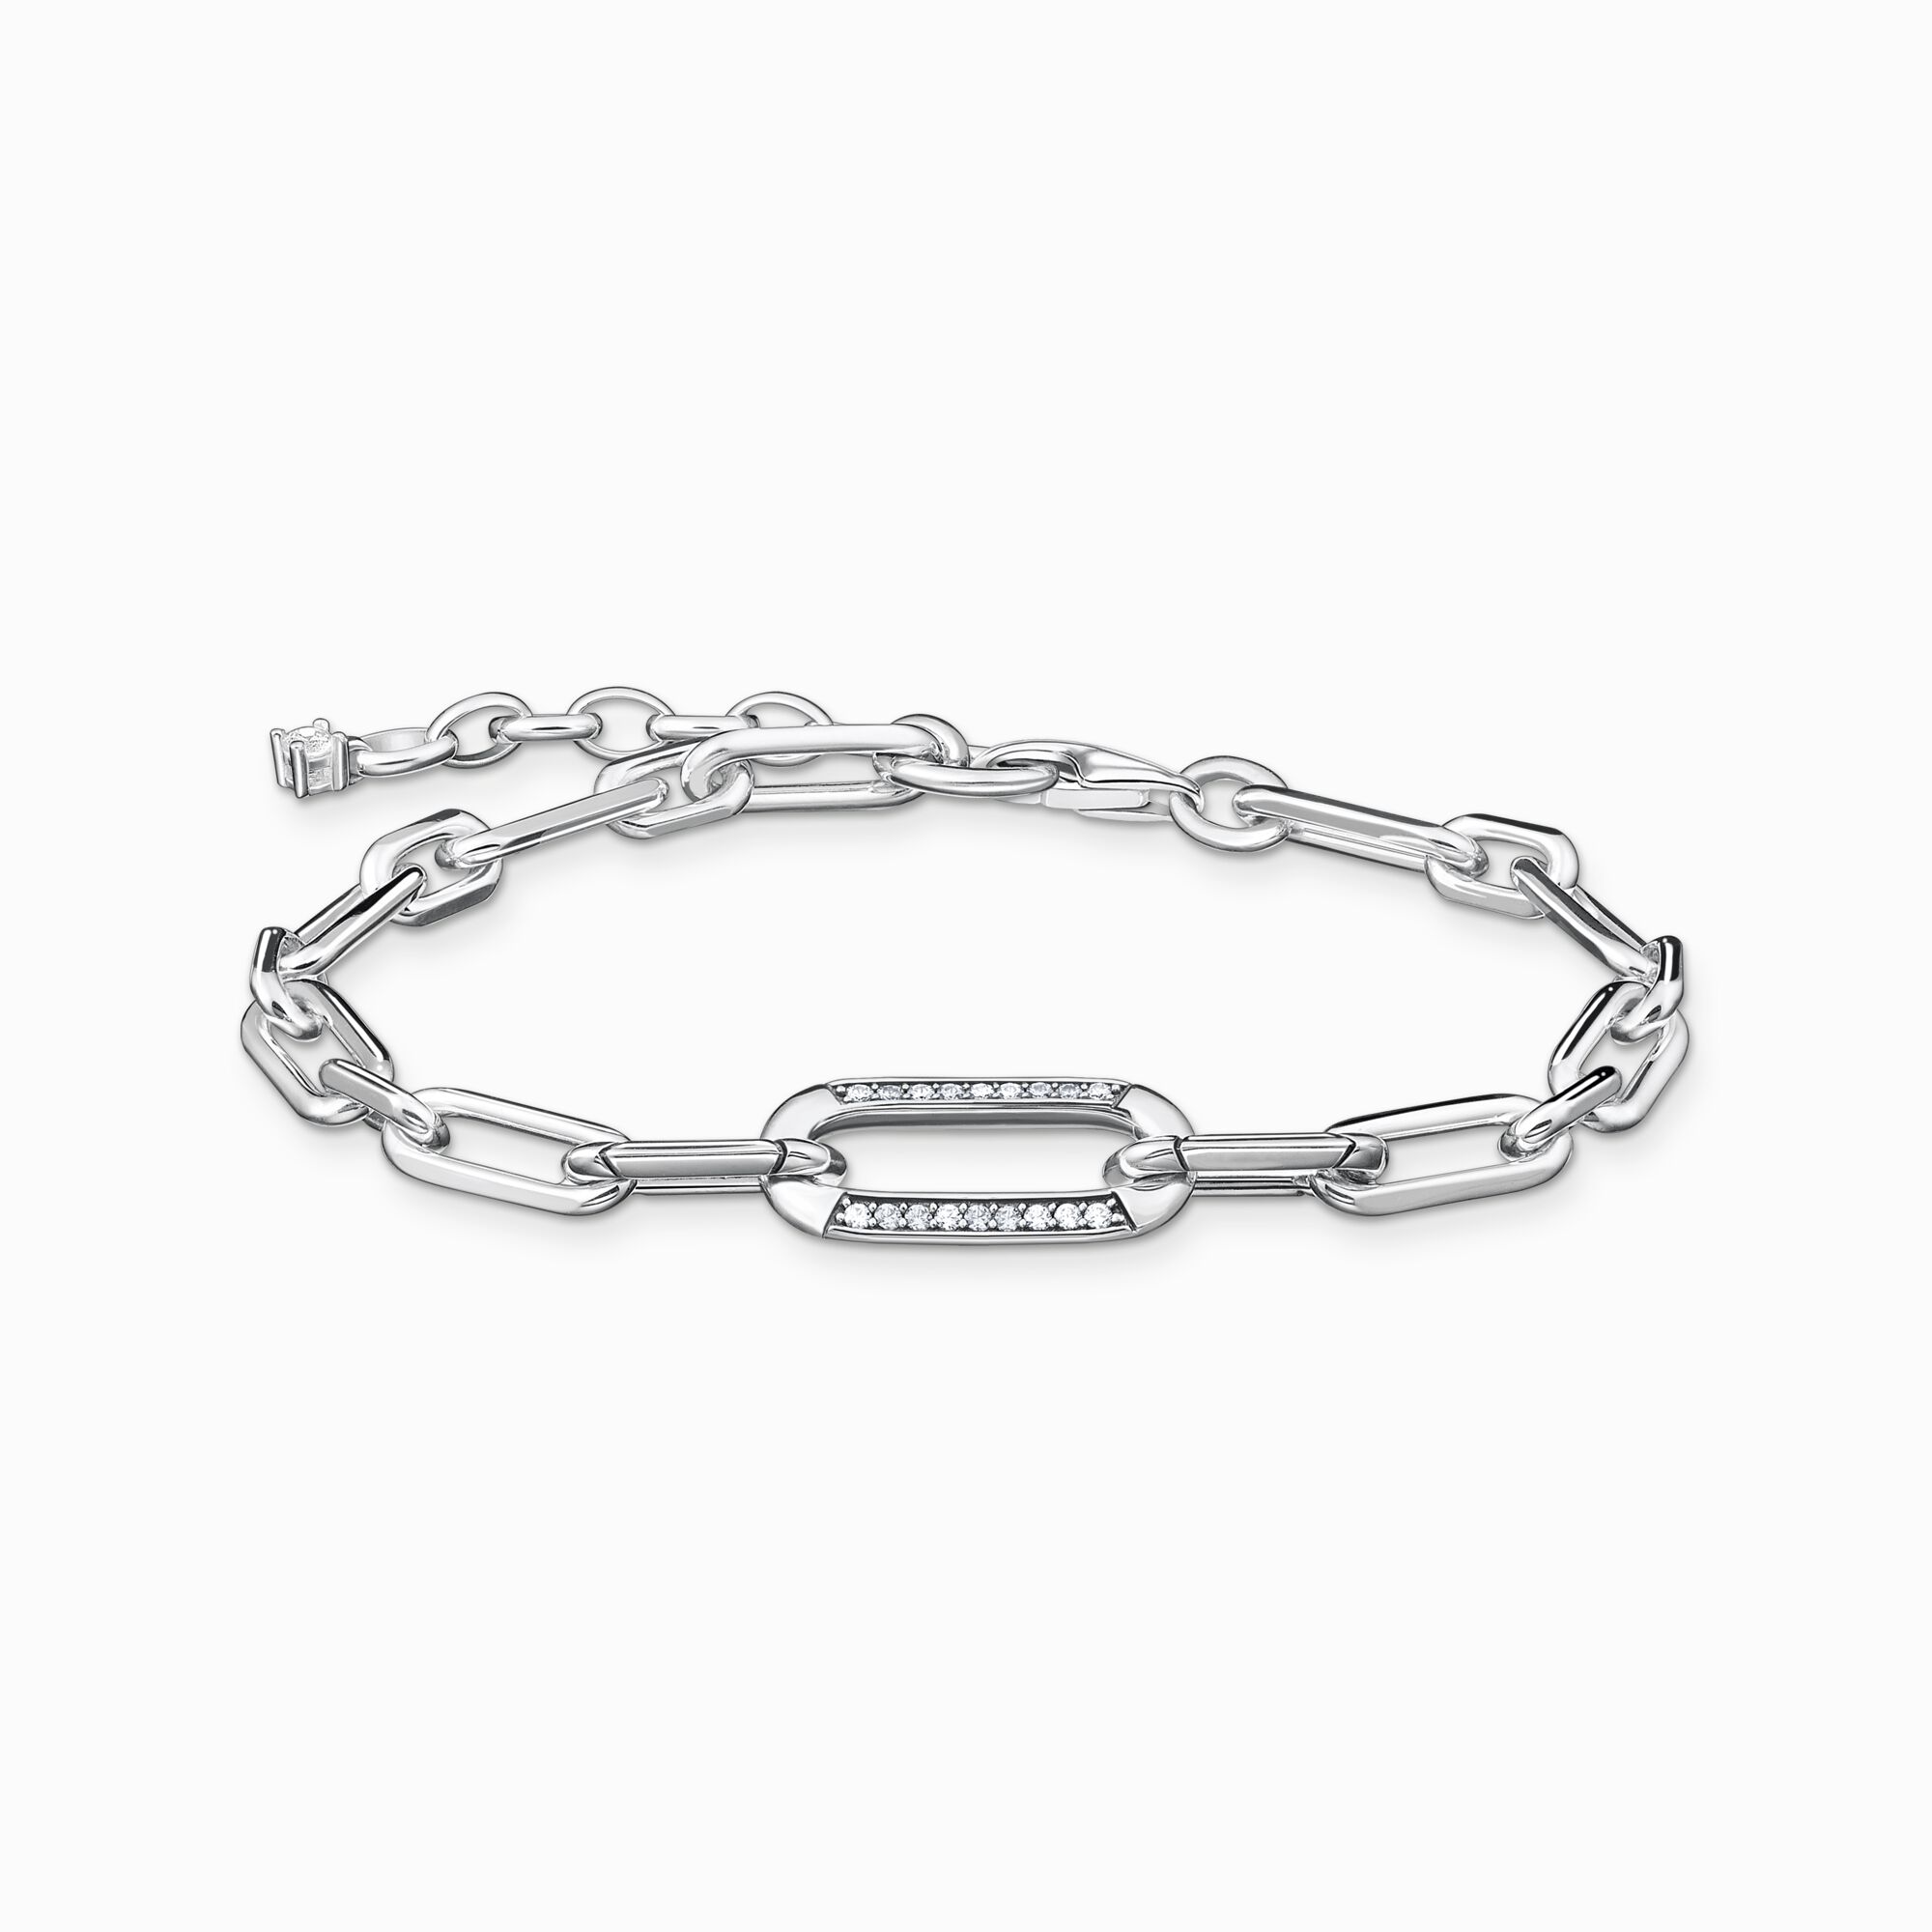 Bracelet for women in anchor chain design – THOMAS SABO